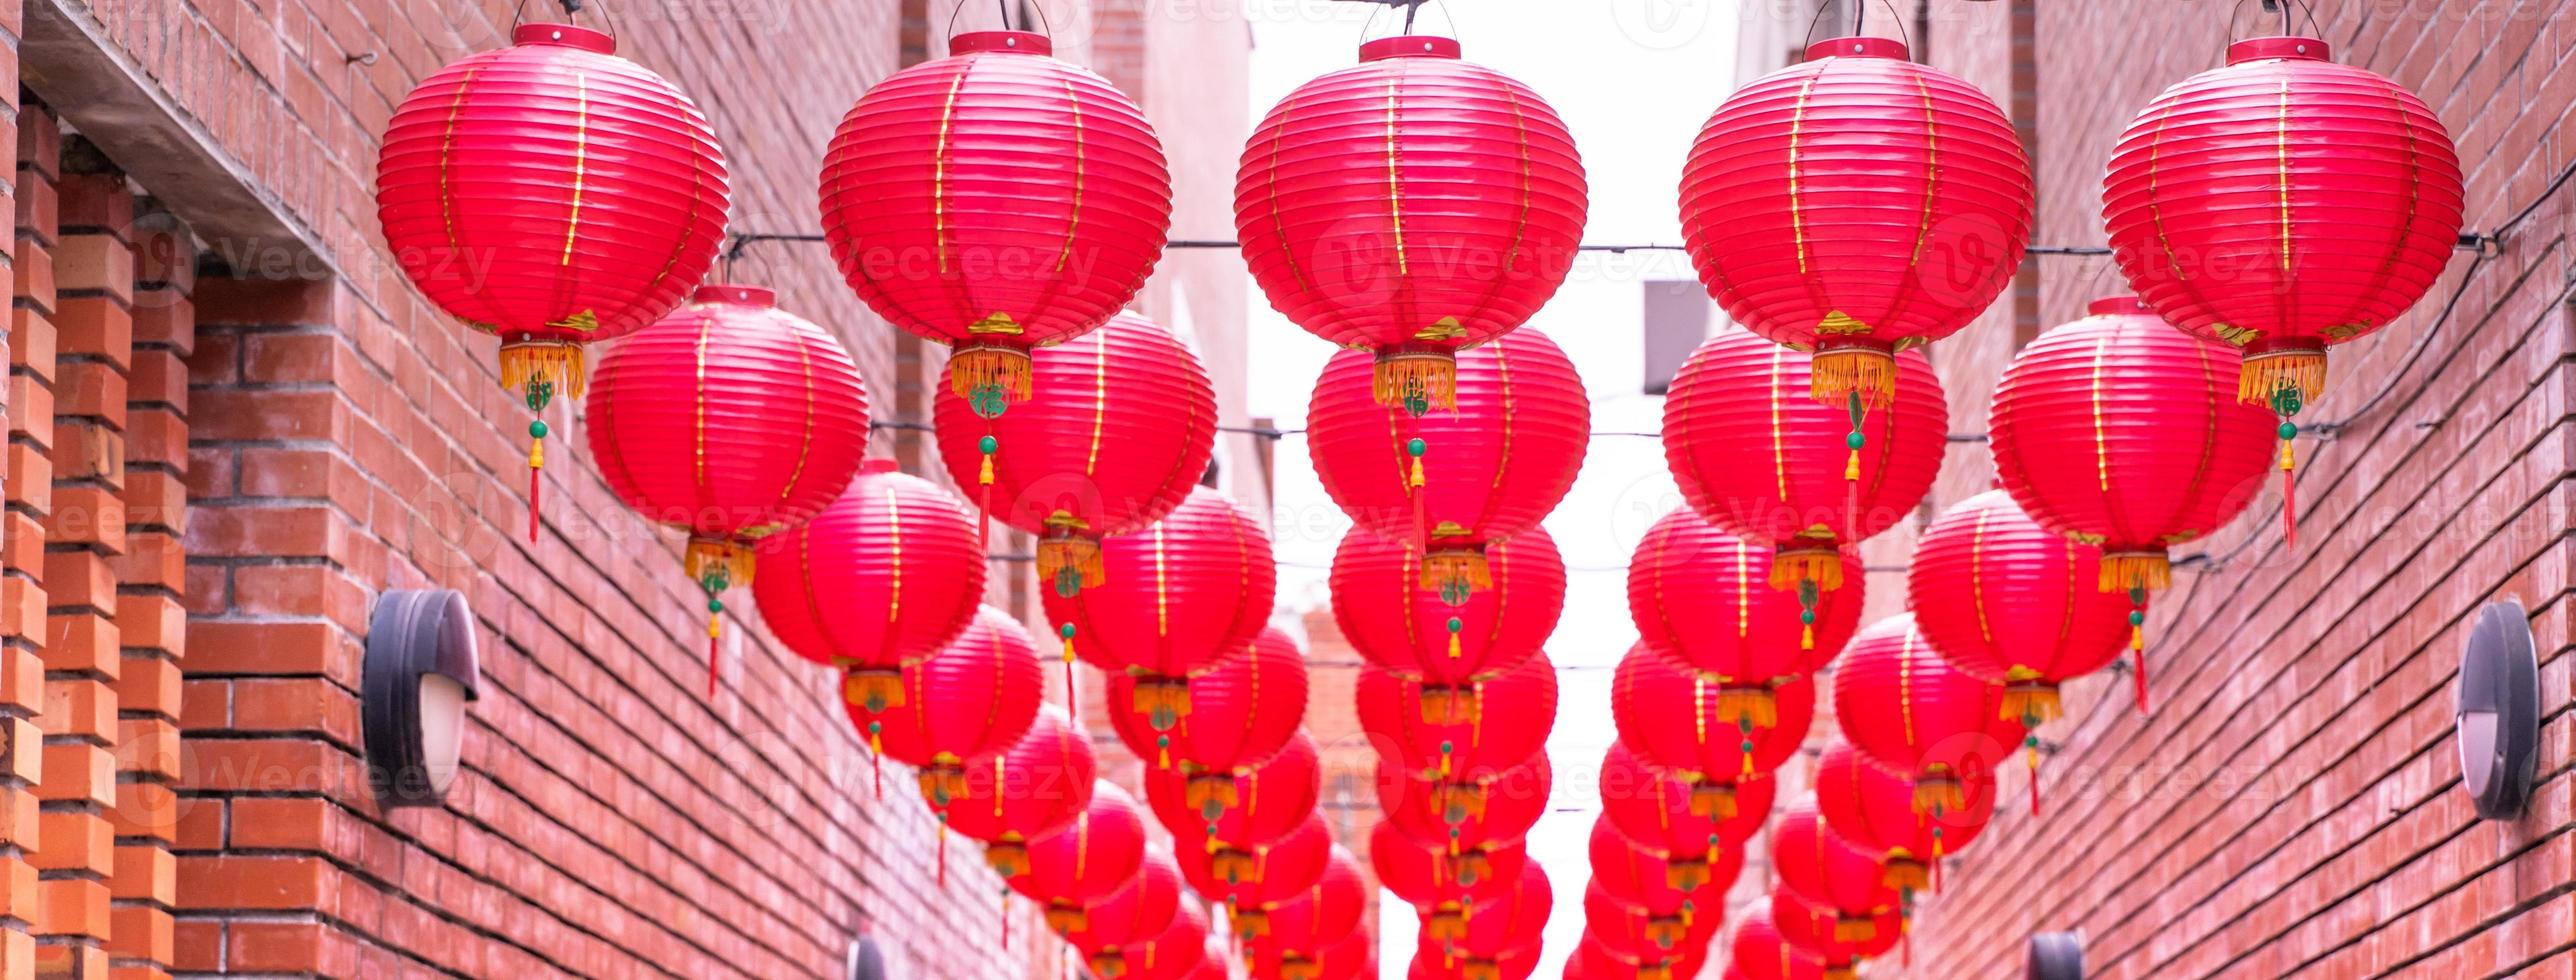 mooie ronde rode lantaarn die op oude traditionele straat hangt, concept van Chinees maannieuwjaarsfestival, close-up. het onderliggende woord betekent zegen. foto